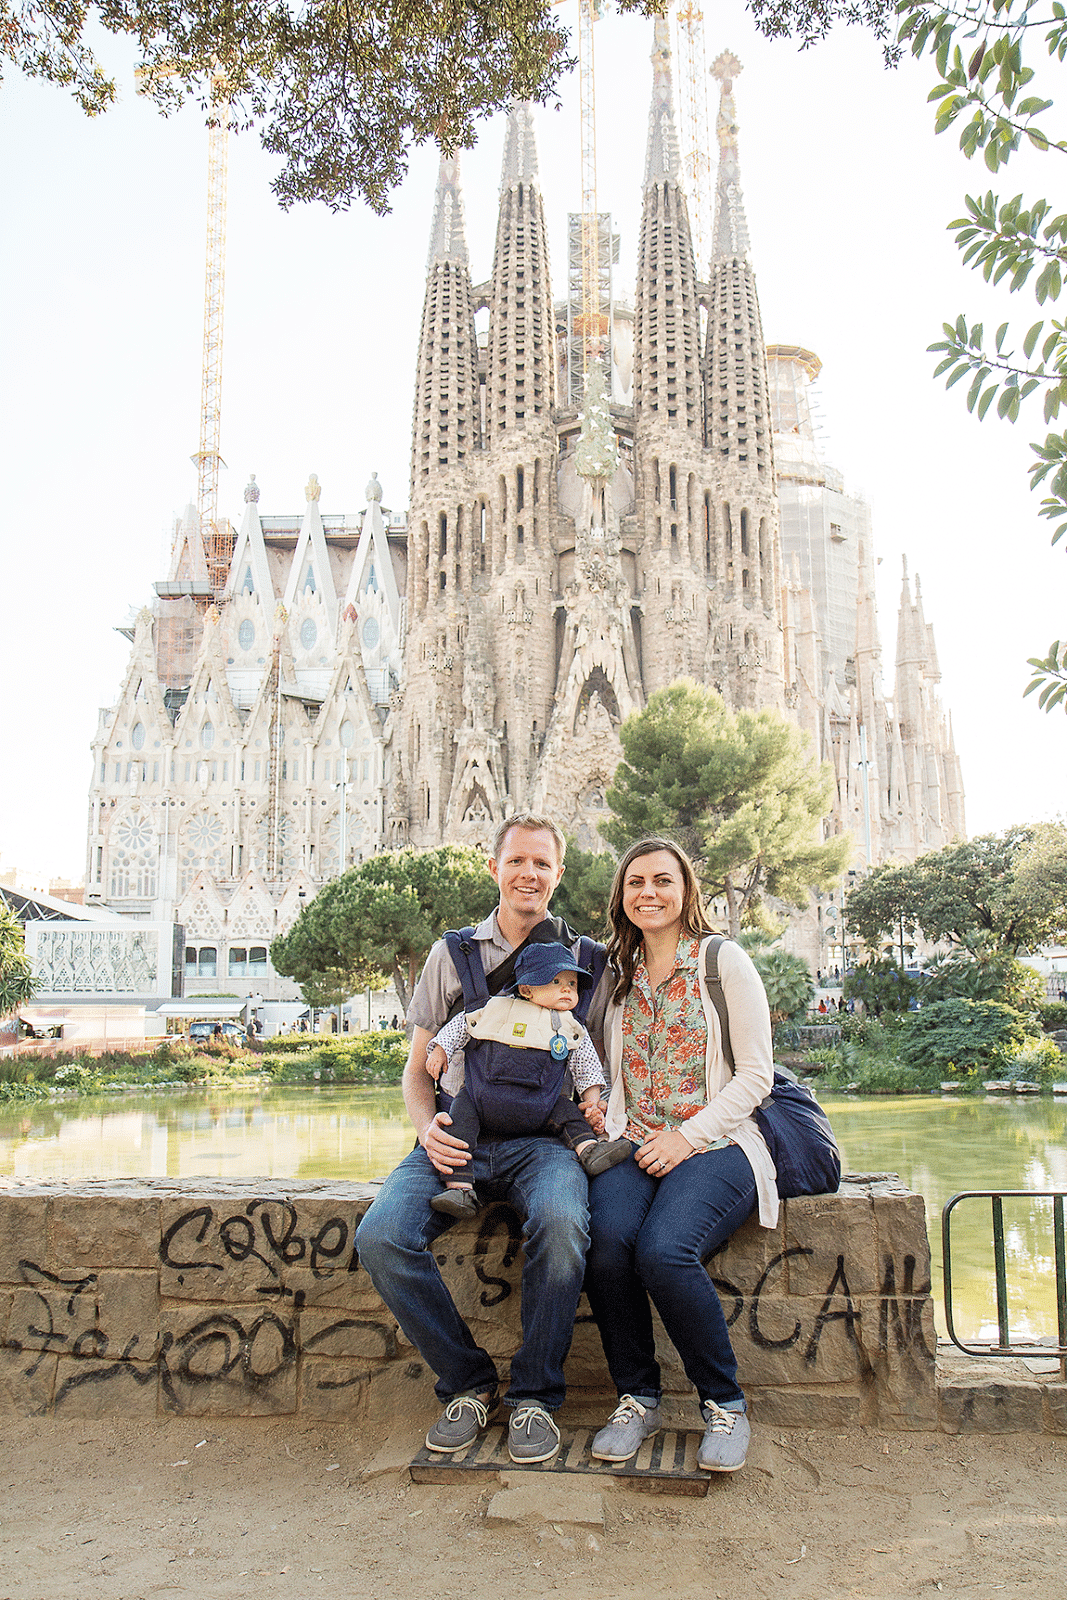 Spain Day 4: Barcelona: 10 Tips for Visiting La Sagrada Familia